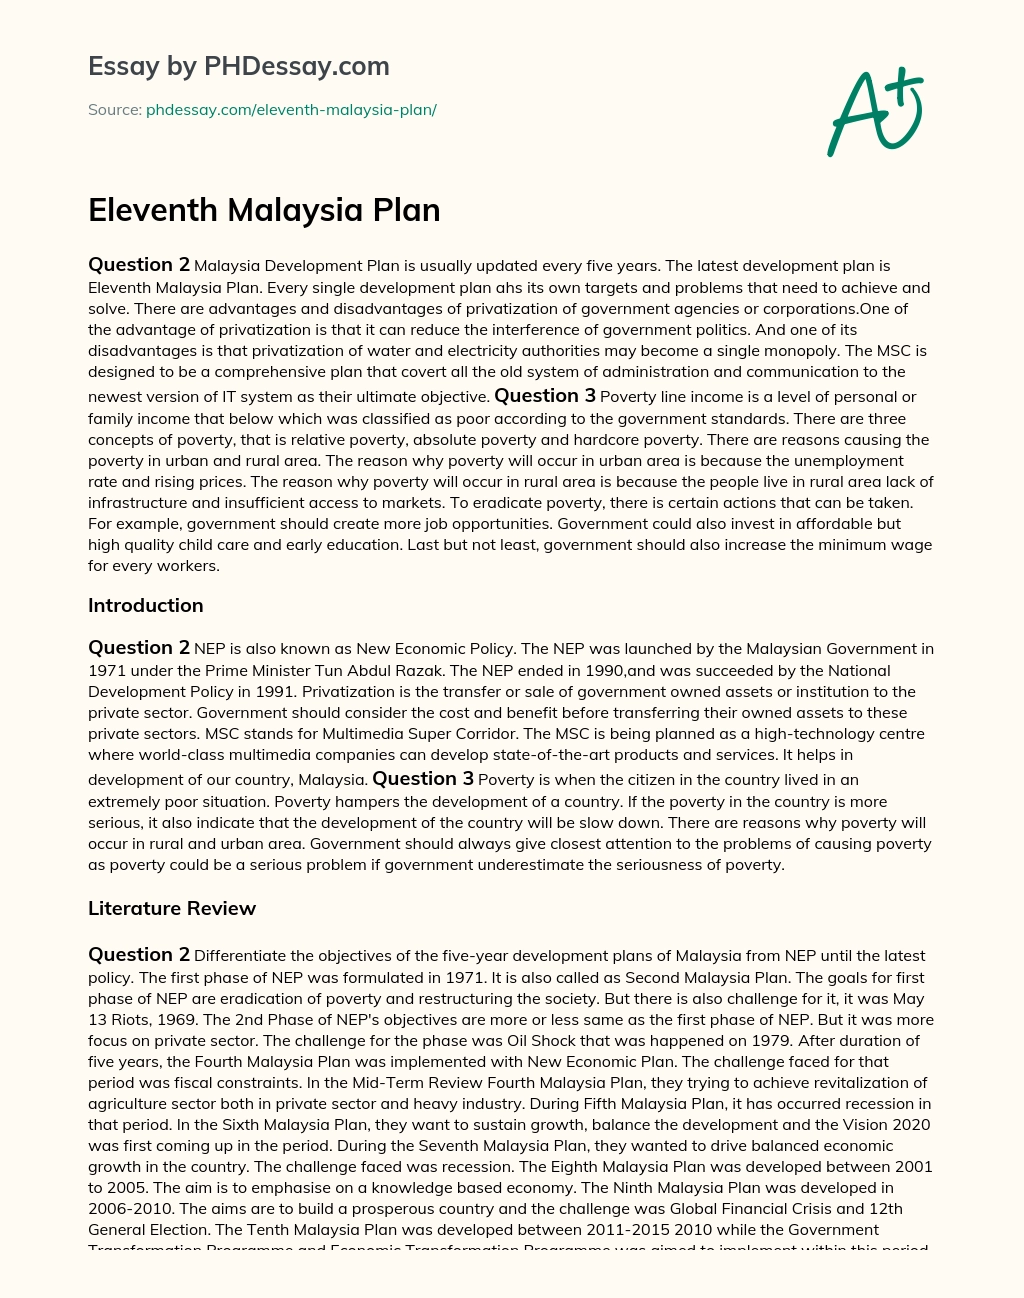 Eleventh Malaysia Plan essay